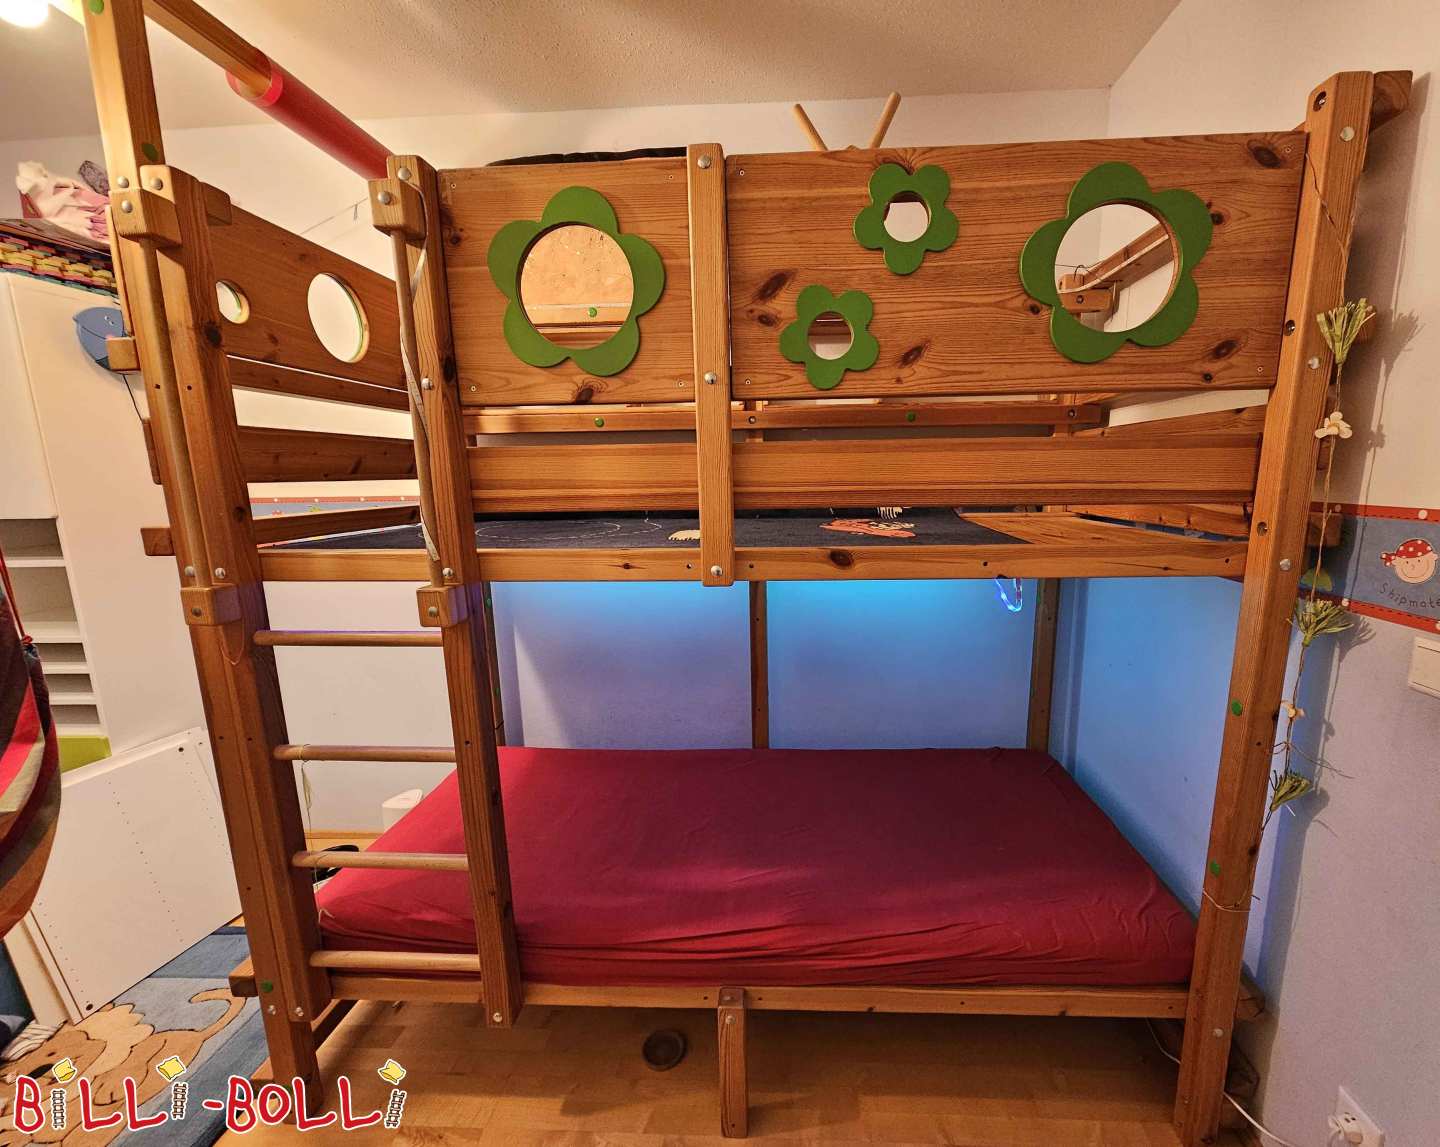 Podkrovní postel, která roste s dítětem, se zelenými deskami s květinovou tématikou (Kategorie: Podkrovní postel roste s dítětem použité)